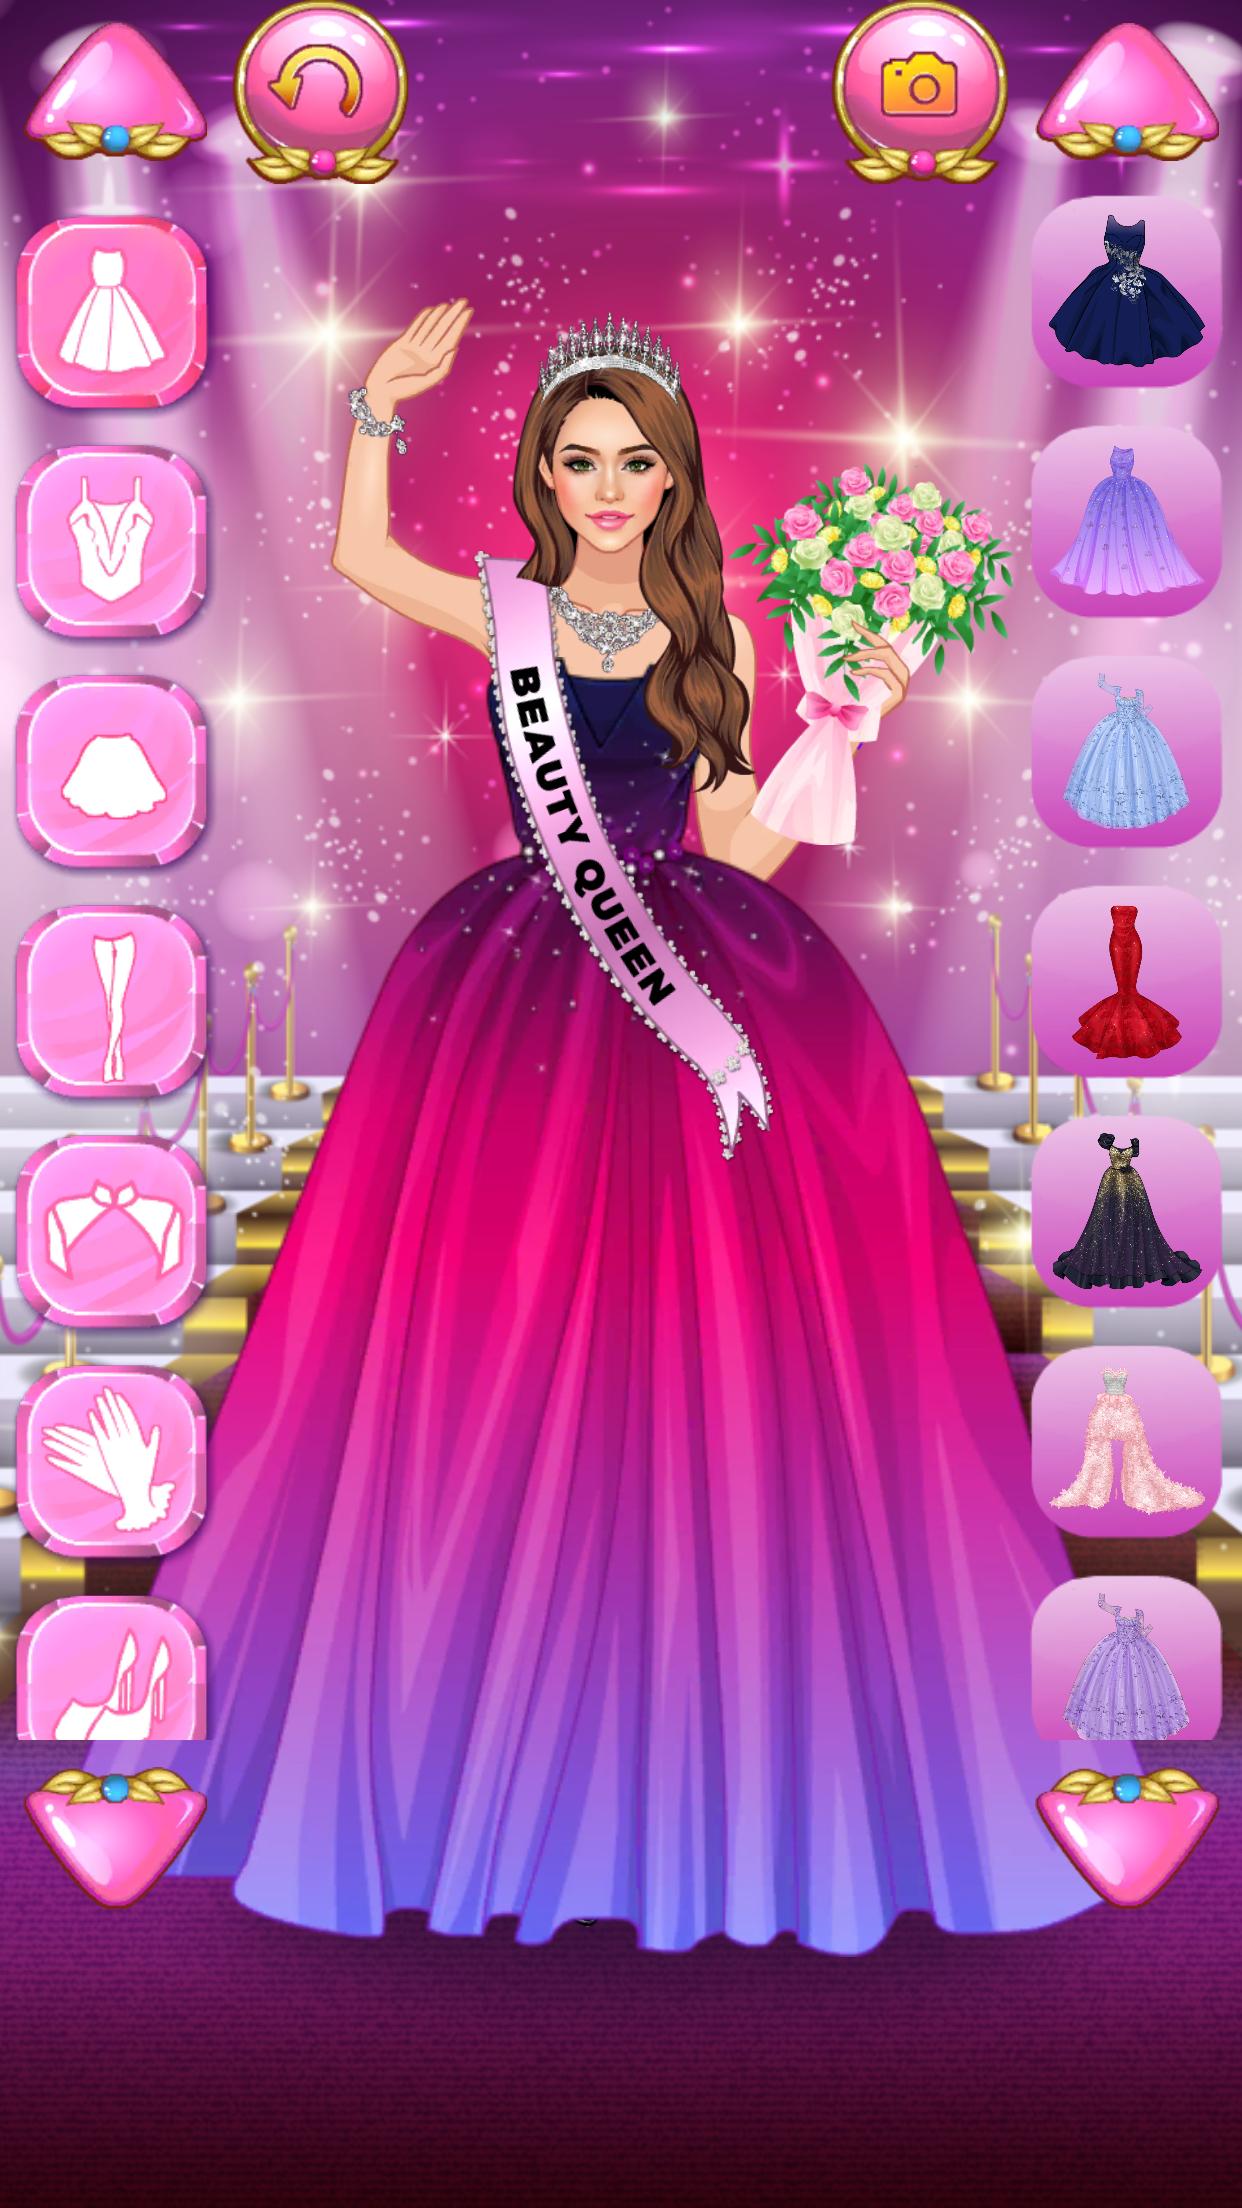 Beauty Queen Dress Up Games